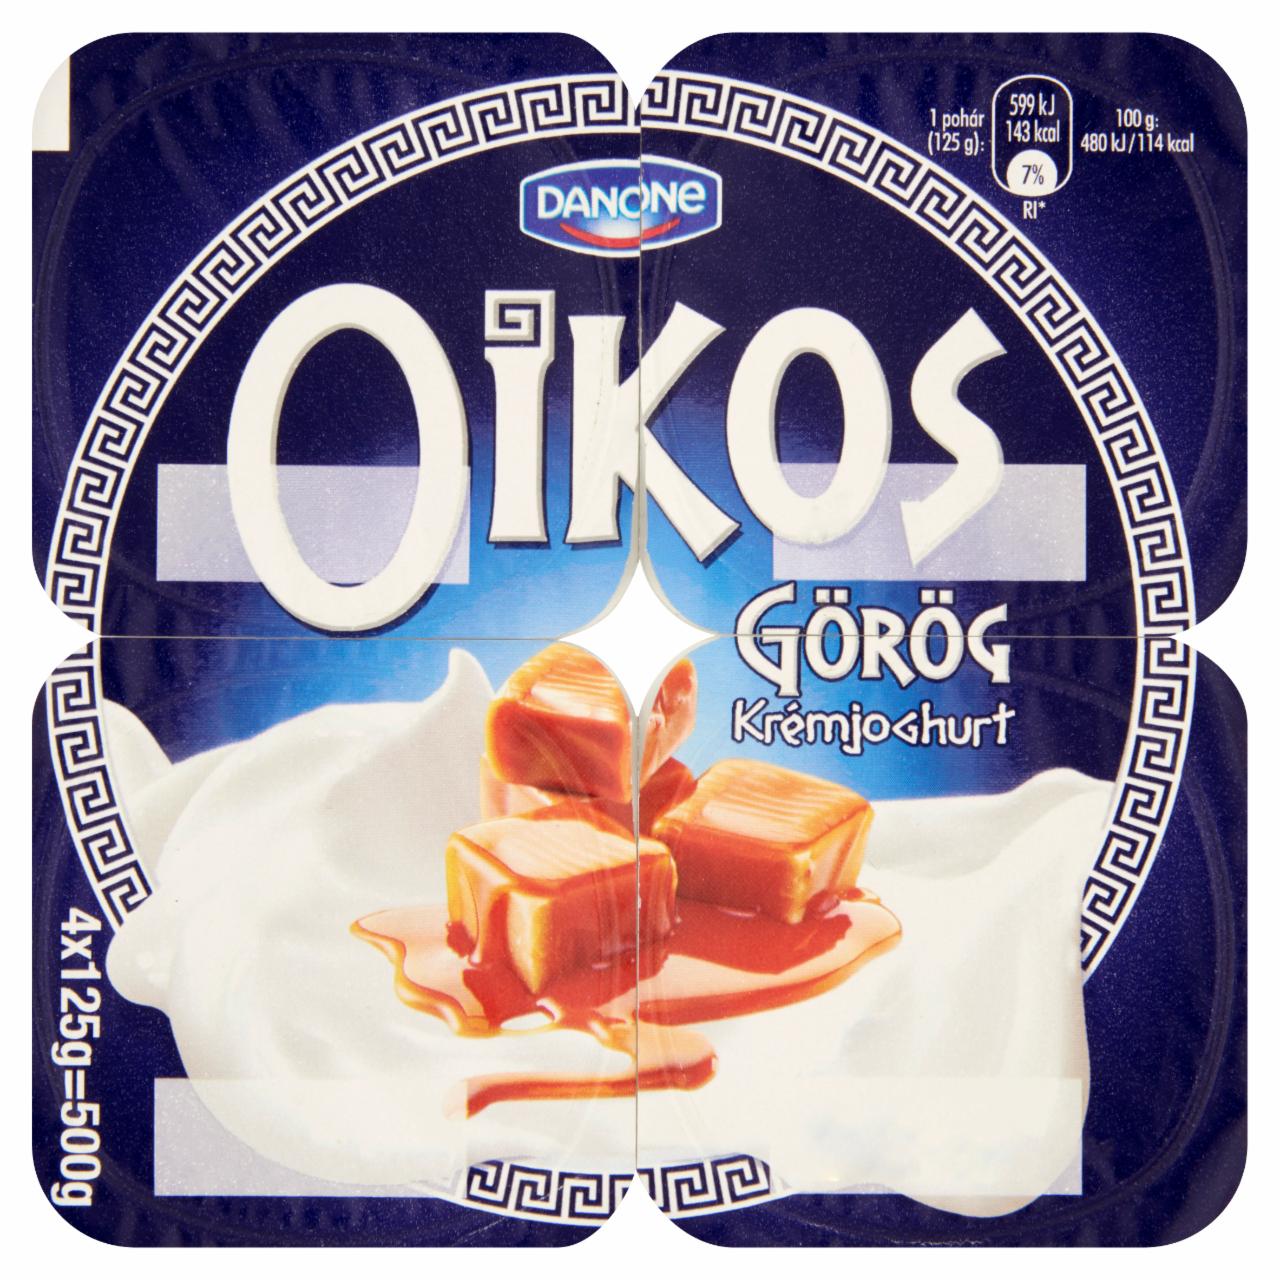 Képek - Danone Oikos Görög karamellaízű élőflórás krémjoghurt 4 x 125 g